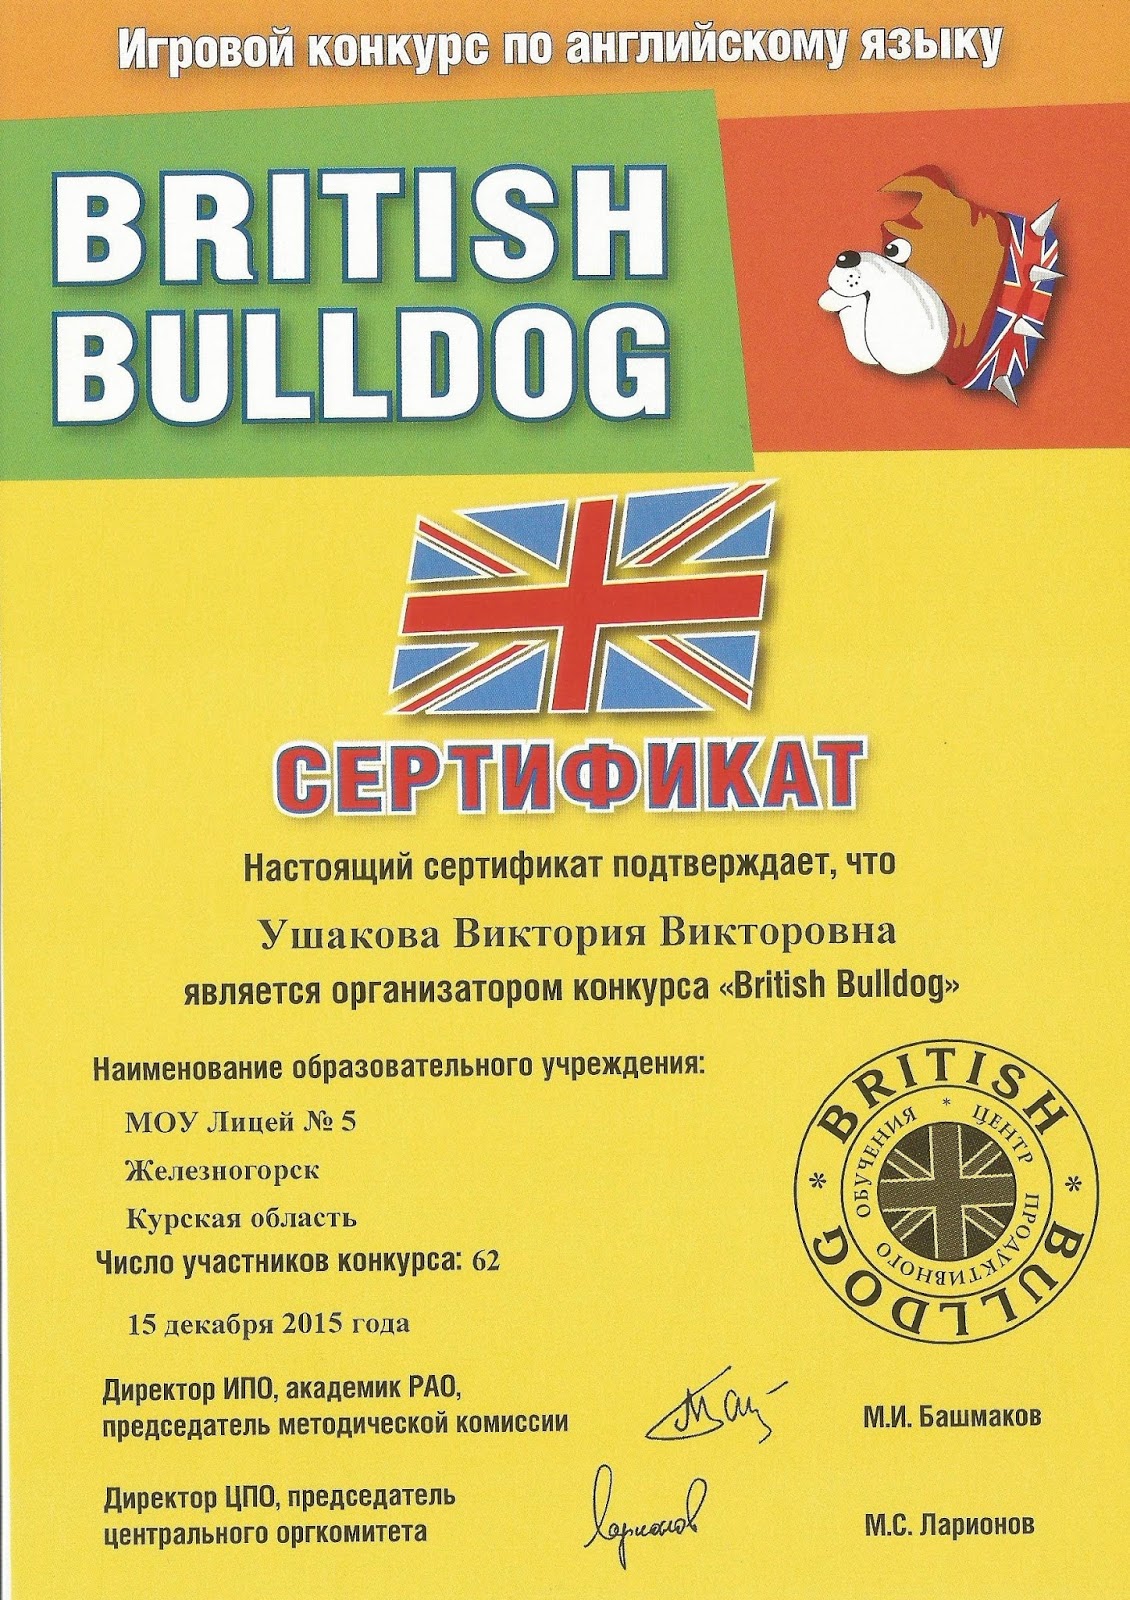 Бульдог конкурс по английскому языку. Сертификат организатора British Bulldog. Британский бульдог грамота. British Bulldog (британский бульдог). Британский бульдог конкурс.